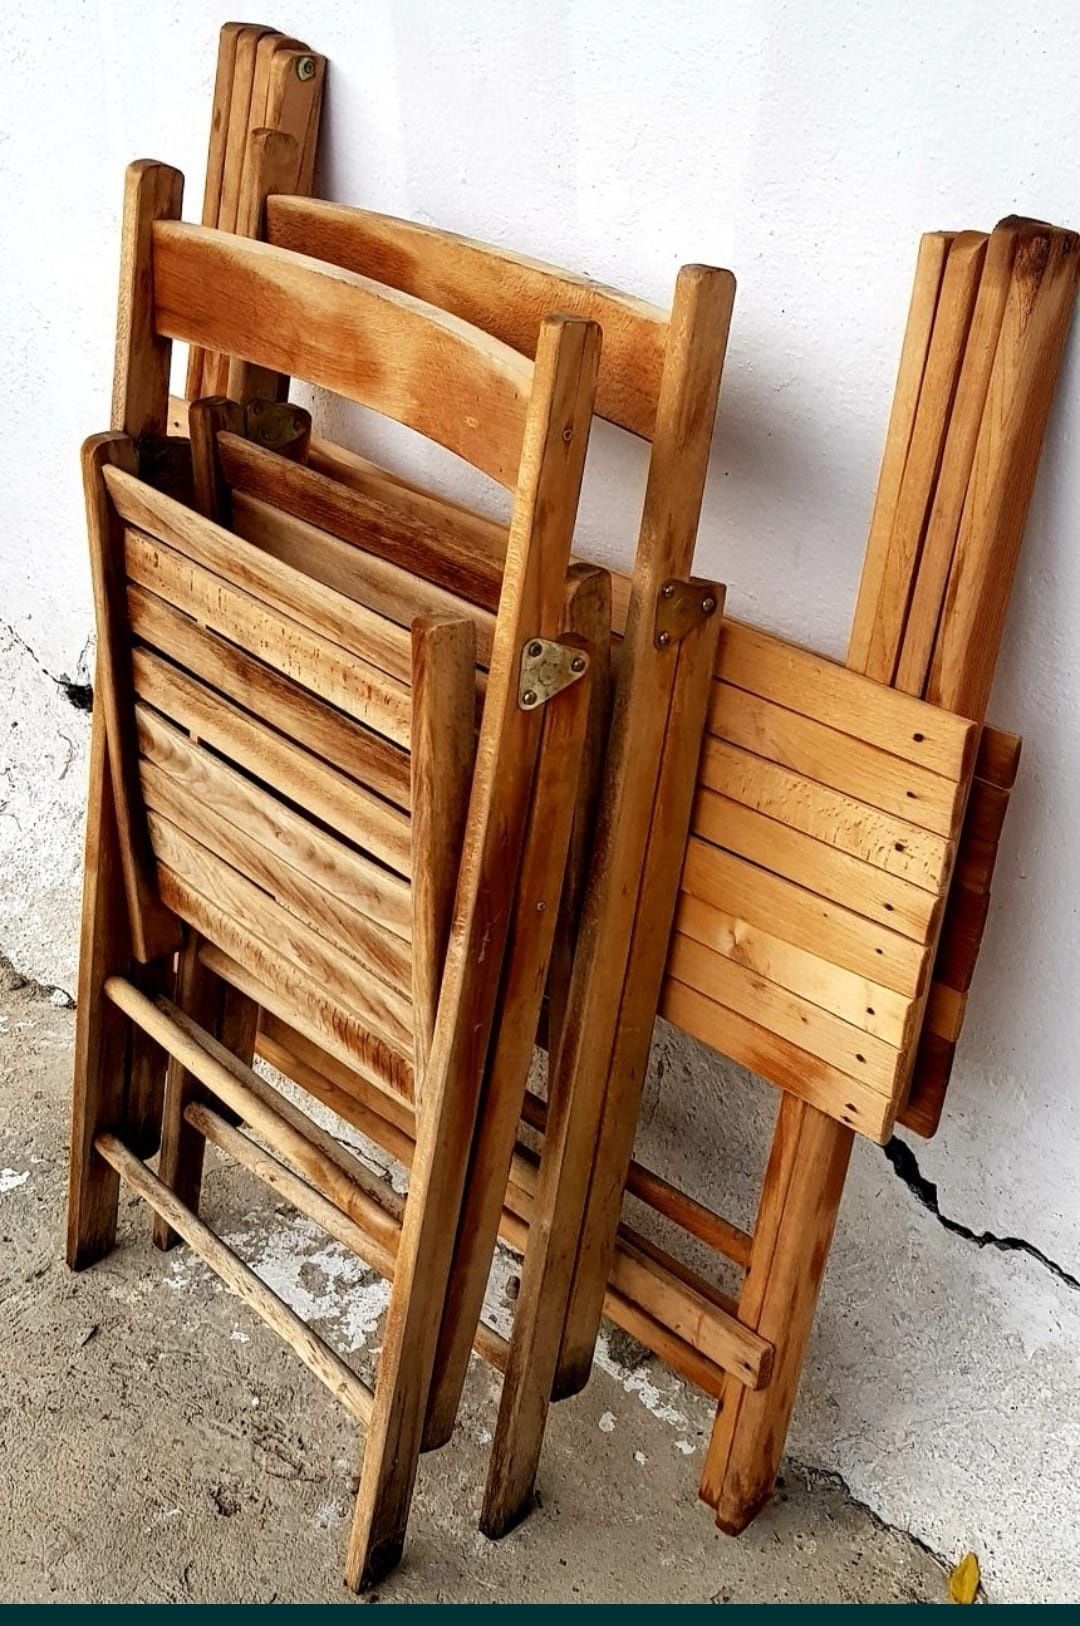 Set masa cu 2 scaune curte gradina picnic pliabile din lemn tare